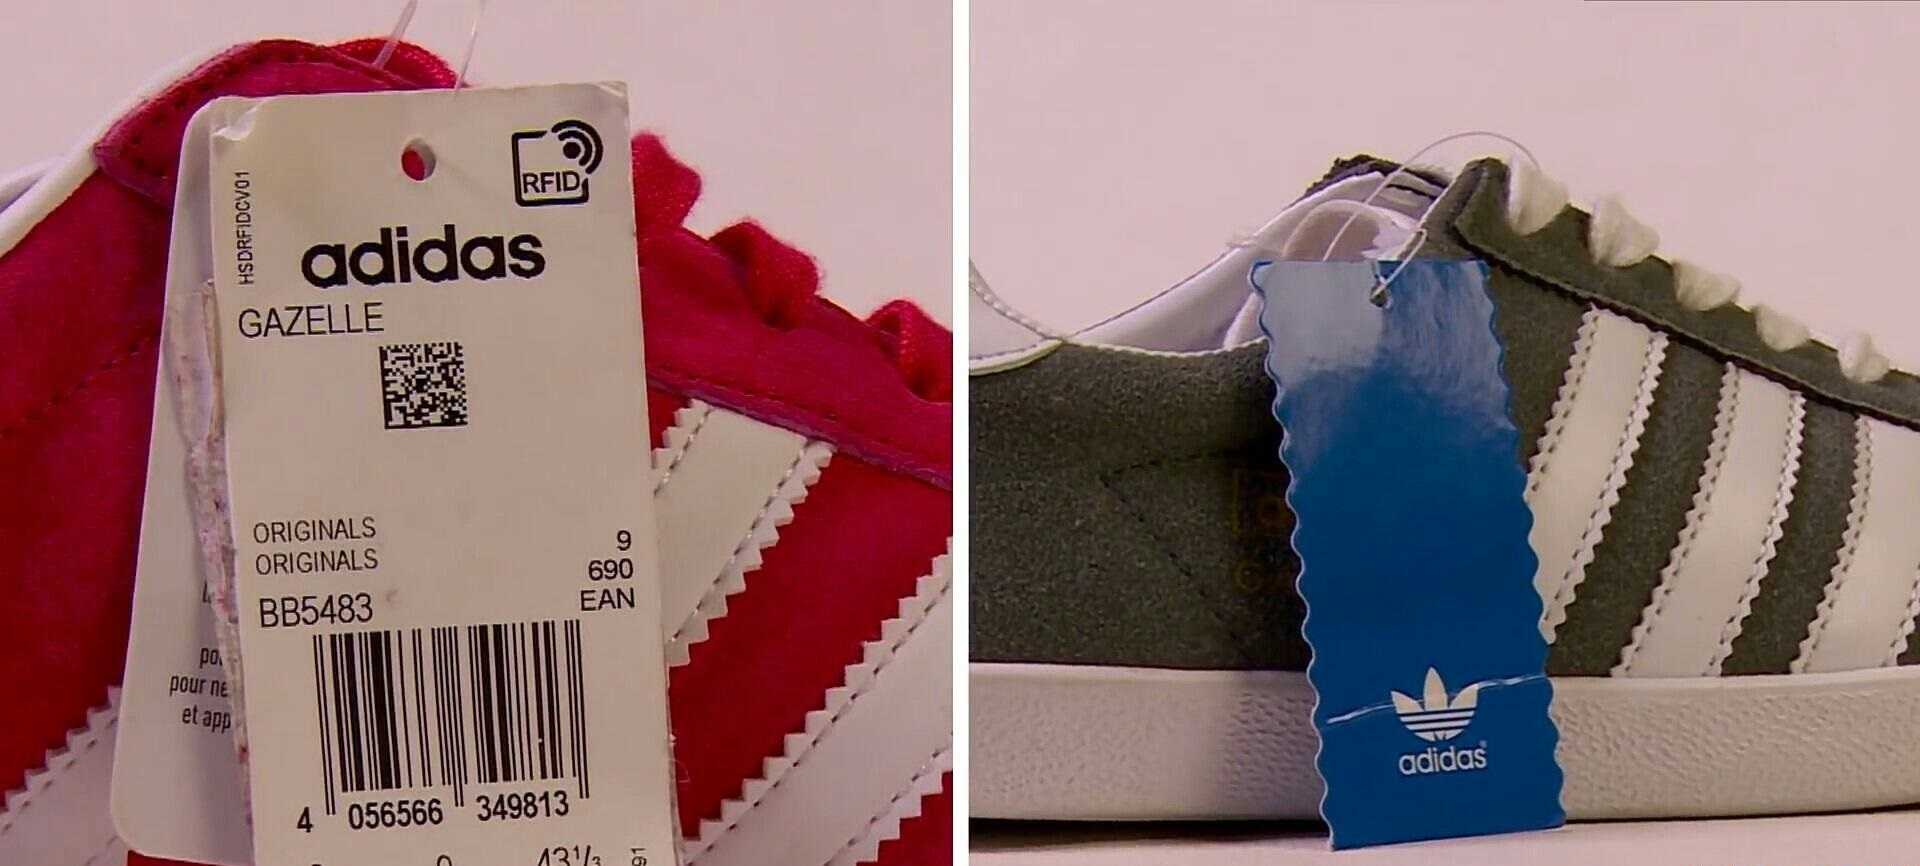 Adidas hamburg & adidas gazelle отличаем подделку от оригинала